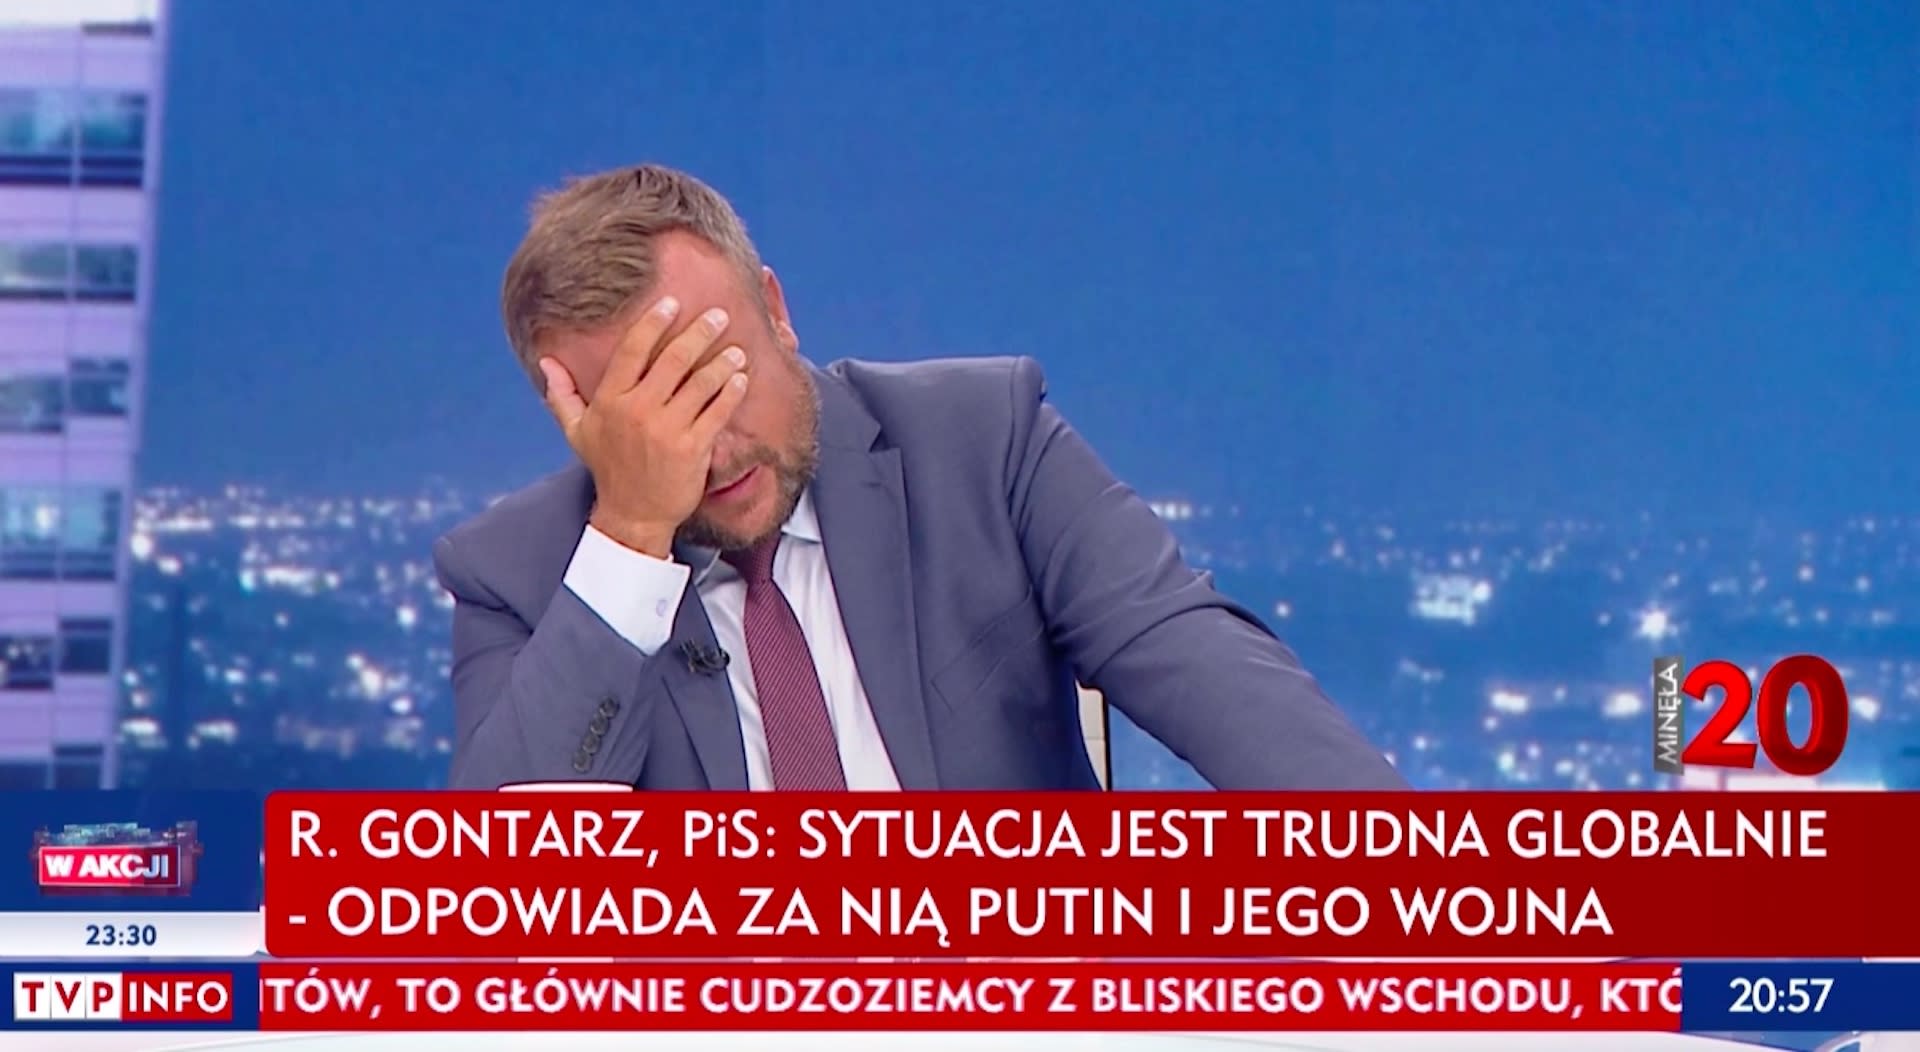 PiS skrytykowane na antenie TVP Info w programie "Minęła 20"